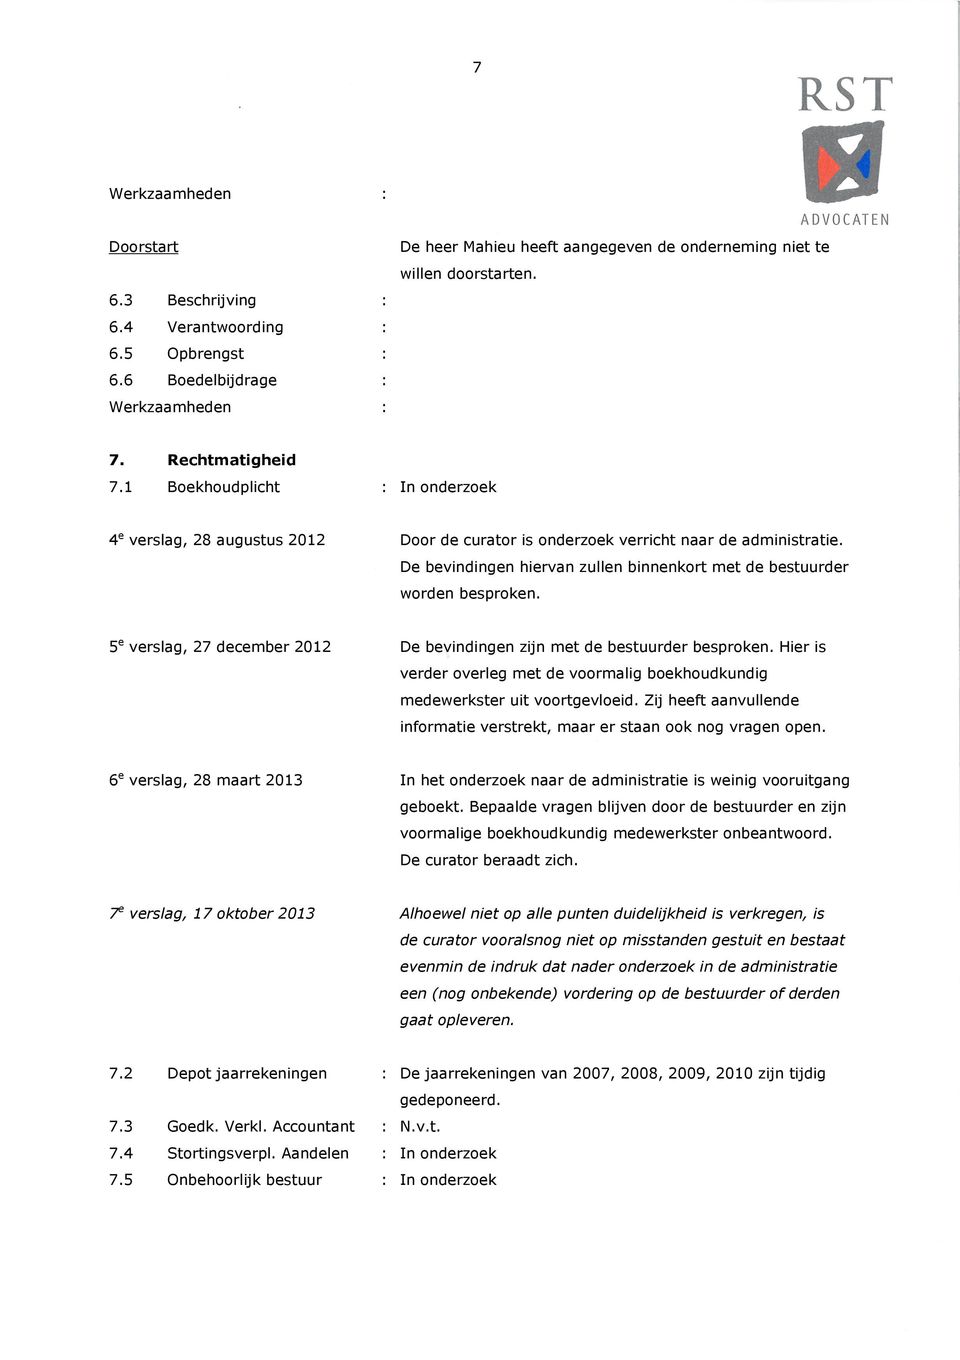 5 e verslag, 27 december 2012 De bevindingen zijn met de bestuurder besproken. Hier is verder overleg met de voormalig boekhoudkundig medewerkster uit voortgevloeid.